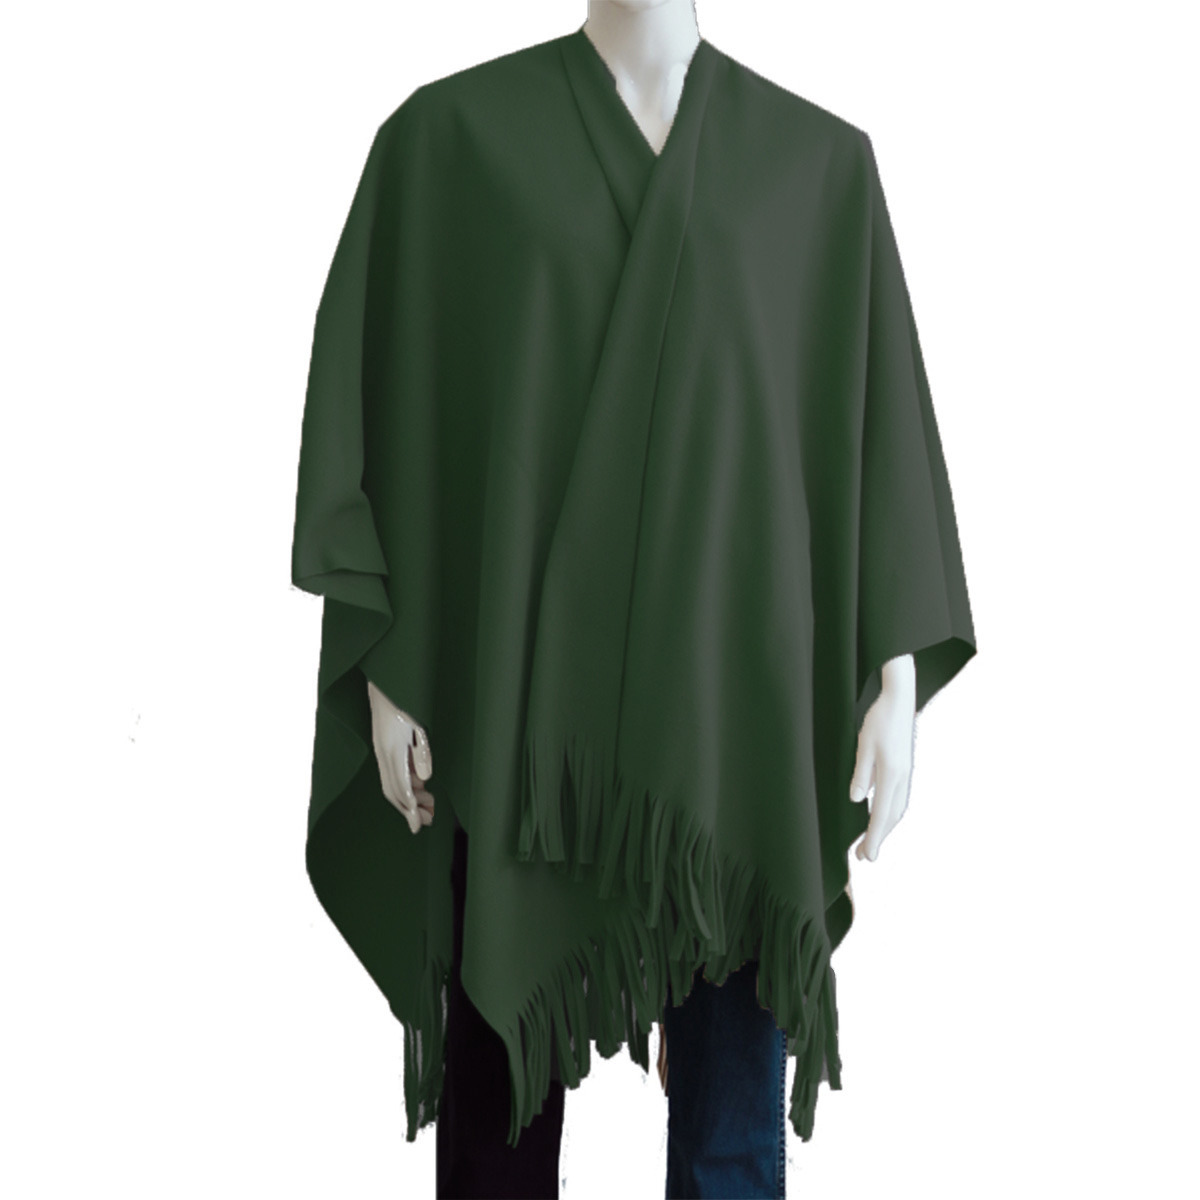 Luxe omslagdoek/poncho - donker groen - 180 x 140 cm - fleece - Dameskleding accessoires One size -